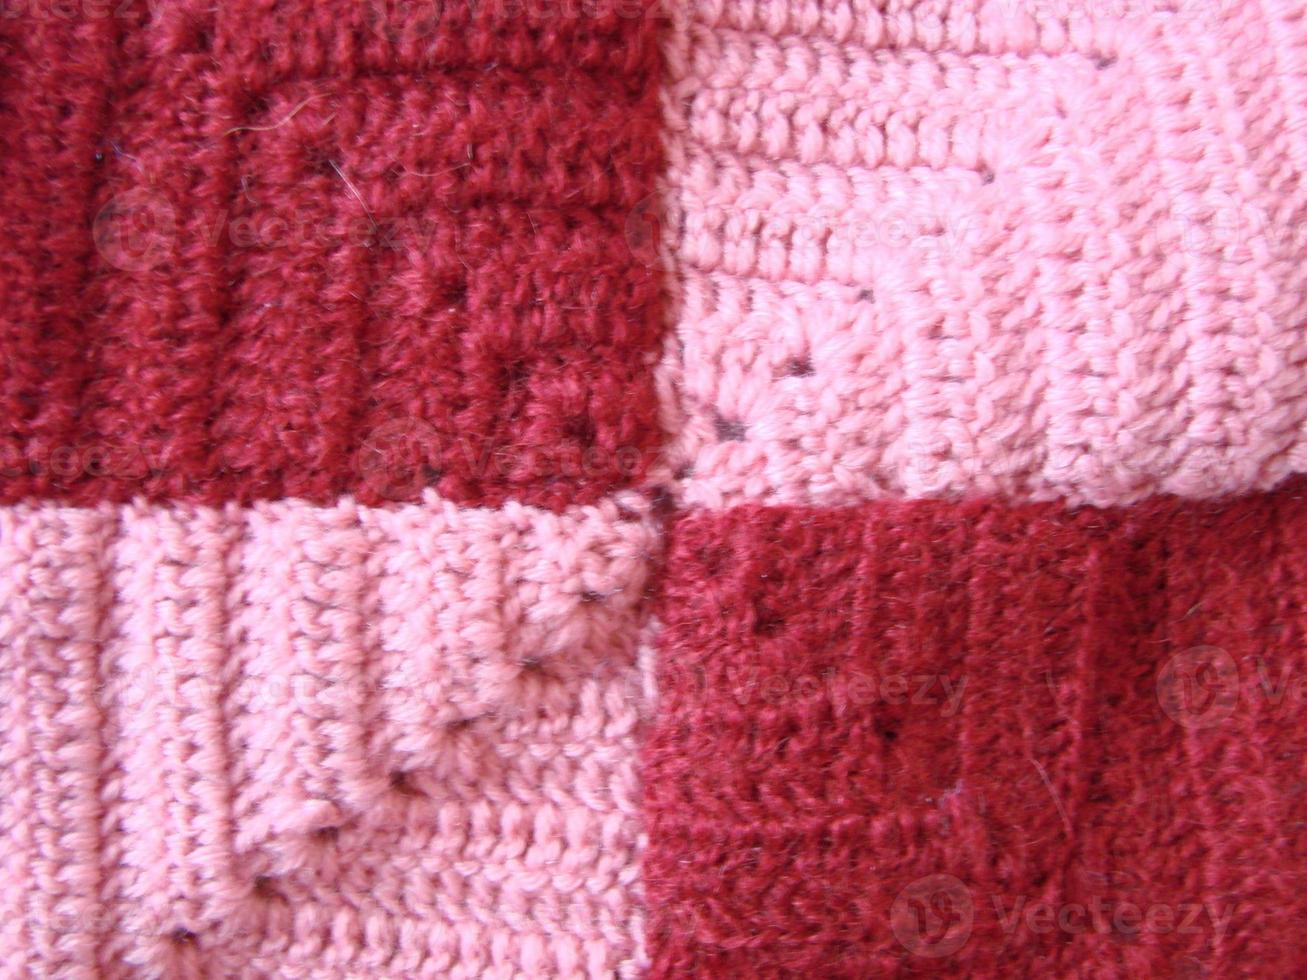 textura de crochê, padrão de quadrados coloridos. quadrados de crochê foto